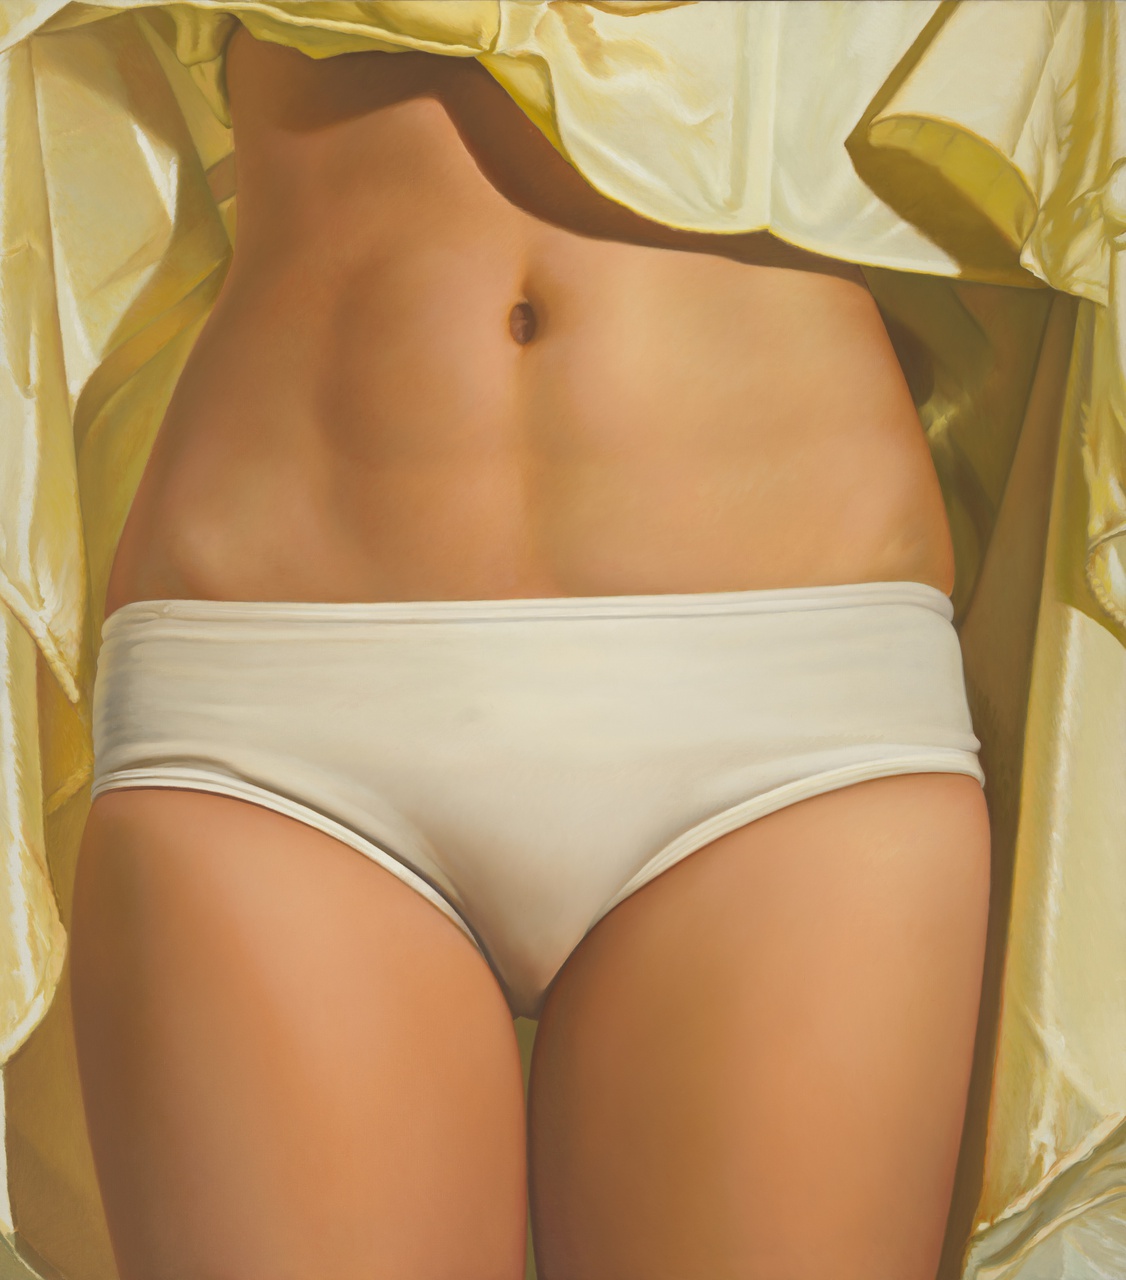 gescihlderde torso van een vrouw, met witte onderbroek, geel kledingstuk op de achtergrond